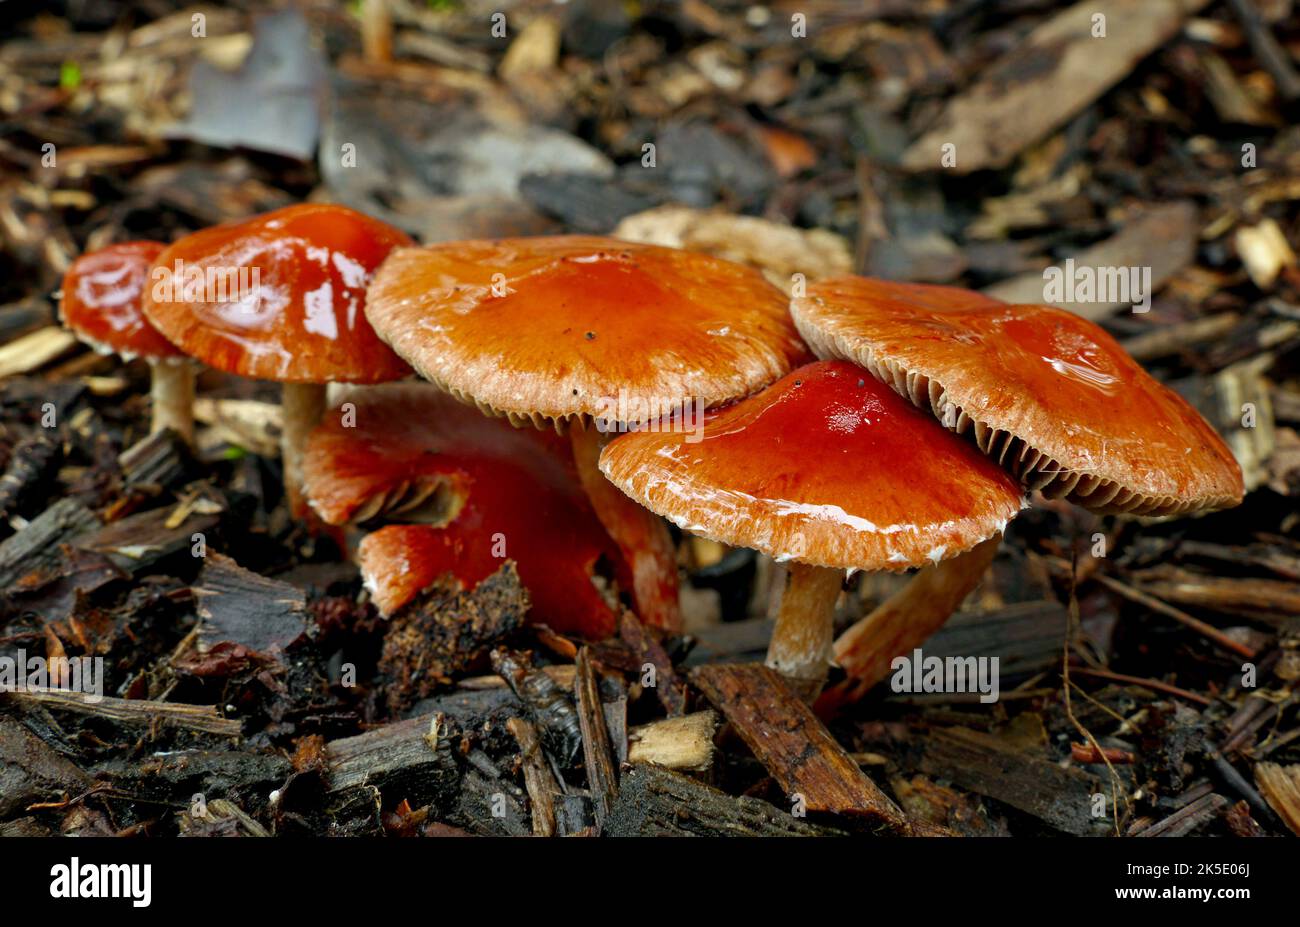 Leratiomyces ceres, allgemein bekannt als Redlead Roundhead, ist ein Pilz, der eine leuchtend rote bis orangefarbene Kappe und eine dunkelviolett-braune Sporenablagerung hat. Er wächst in der Regel gesellig auf Hackschnitzeln und ist einer der häufigsten und charakteristischsten Pilze, die in diesem Lebensraum gefunden werden. Es ist auf Hackschnitzeln und Rasen in Nordamerika, Europa, Australien, Neuseeland und anderswo üblich. Der Name Stropharia aurantiaca wurde für diesen Pilz (zusammen mit einer Reihe ähnlicher Synonyme) häufig, aber falsch verwendet. ? Kredit: BSpragg Stockfoto